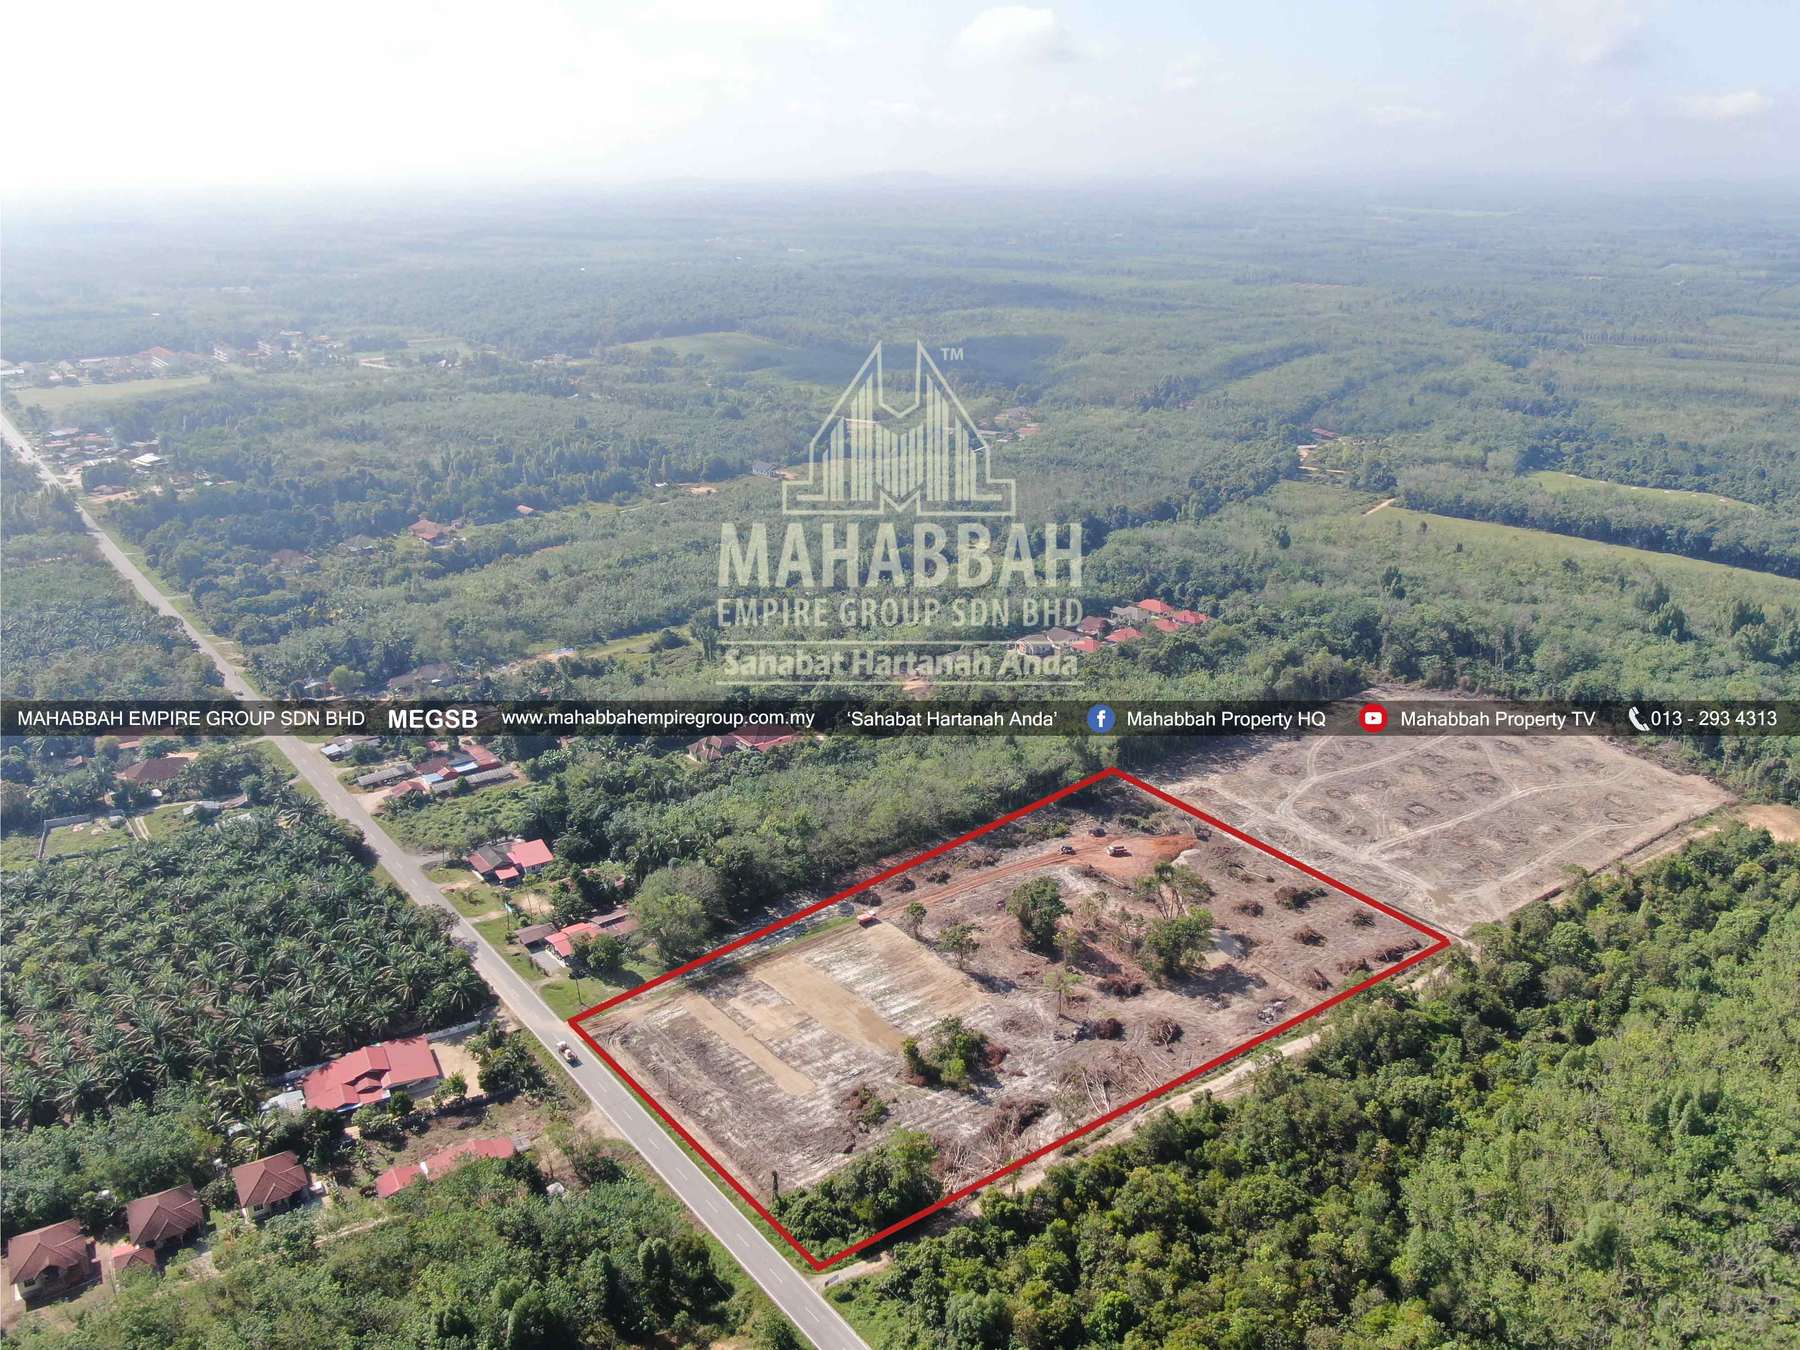 02 Tanah Lot Banglo Mampu Milik MEGSB Alor Pasir Tanah Merah (TM10)